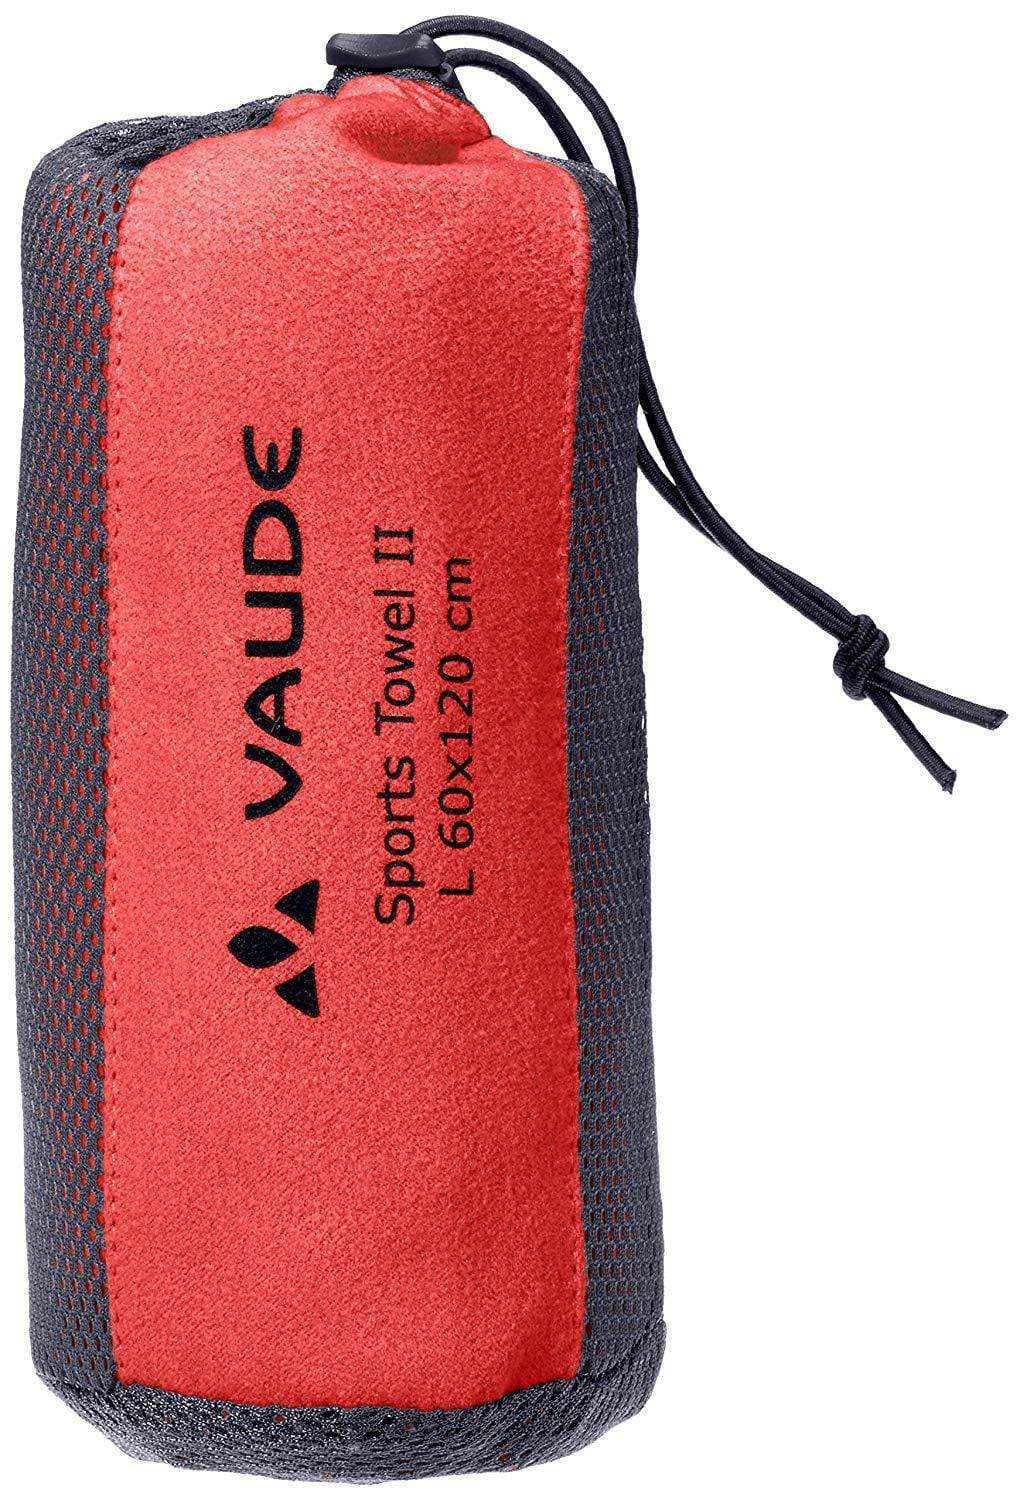 Vaude Towel M (60 x 90 cm) / Flame Vaude Sports Towel II